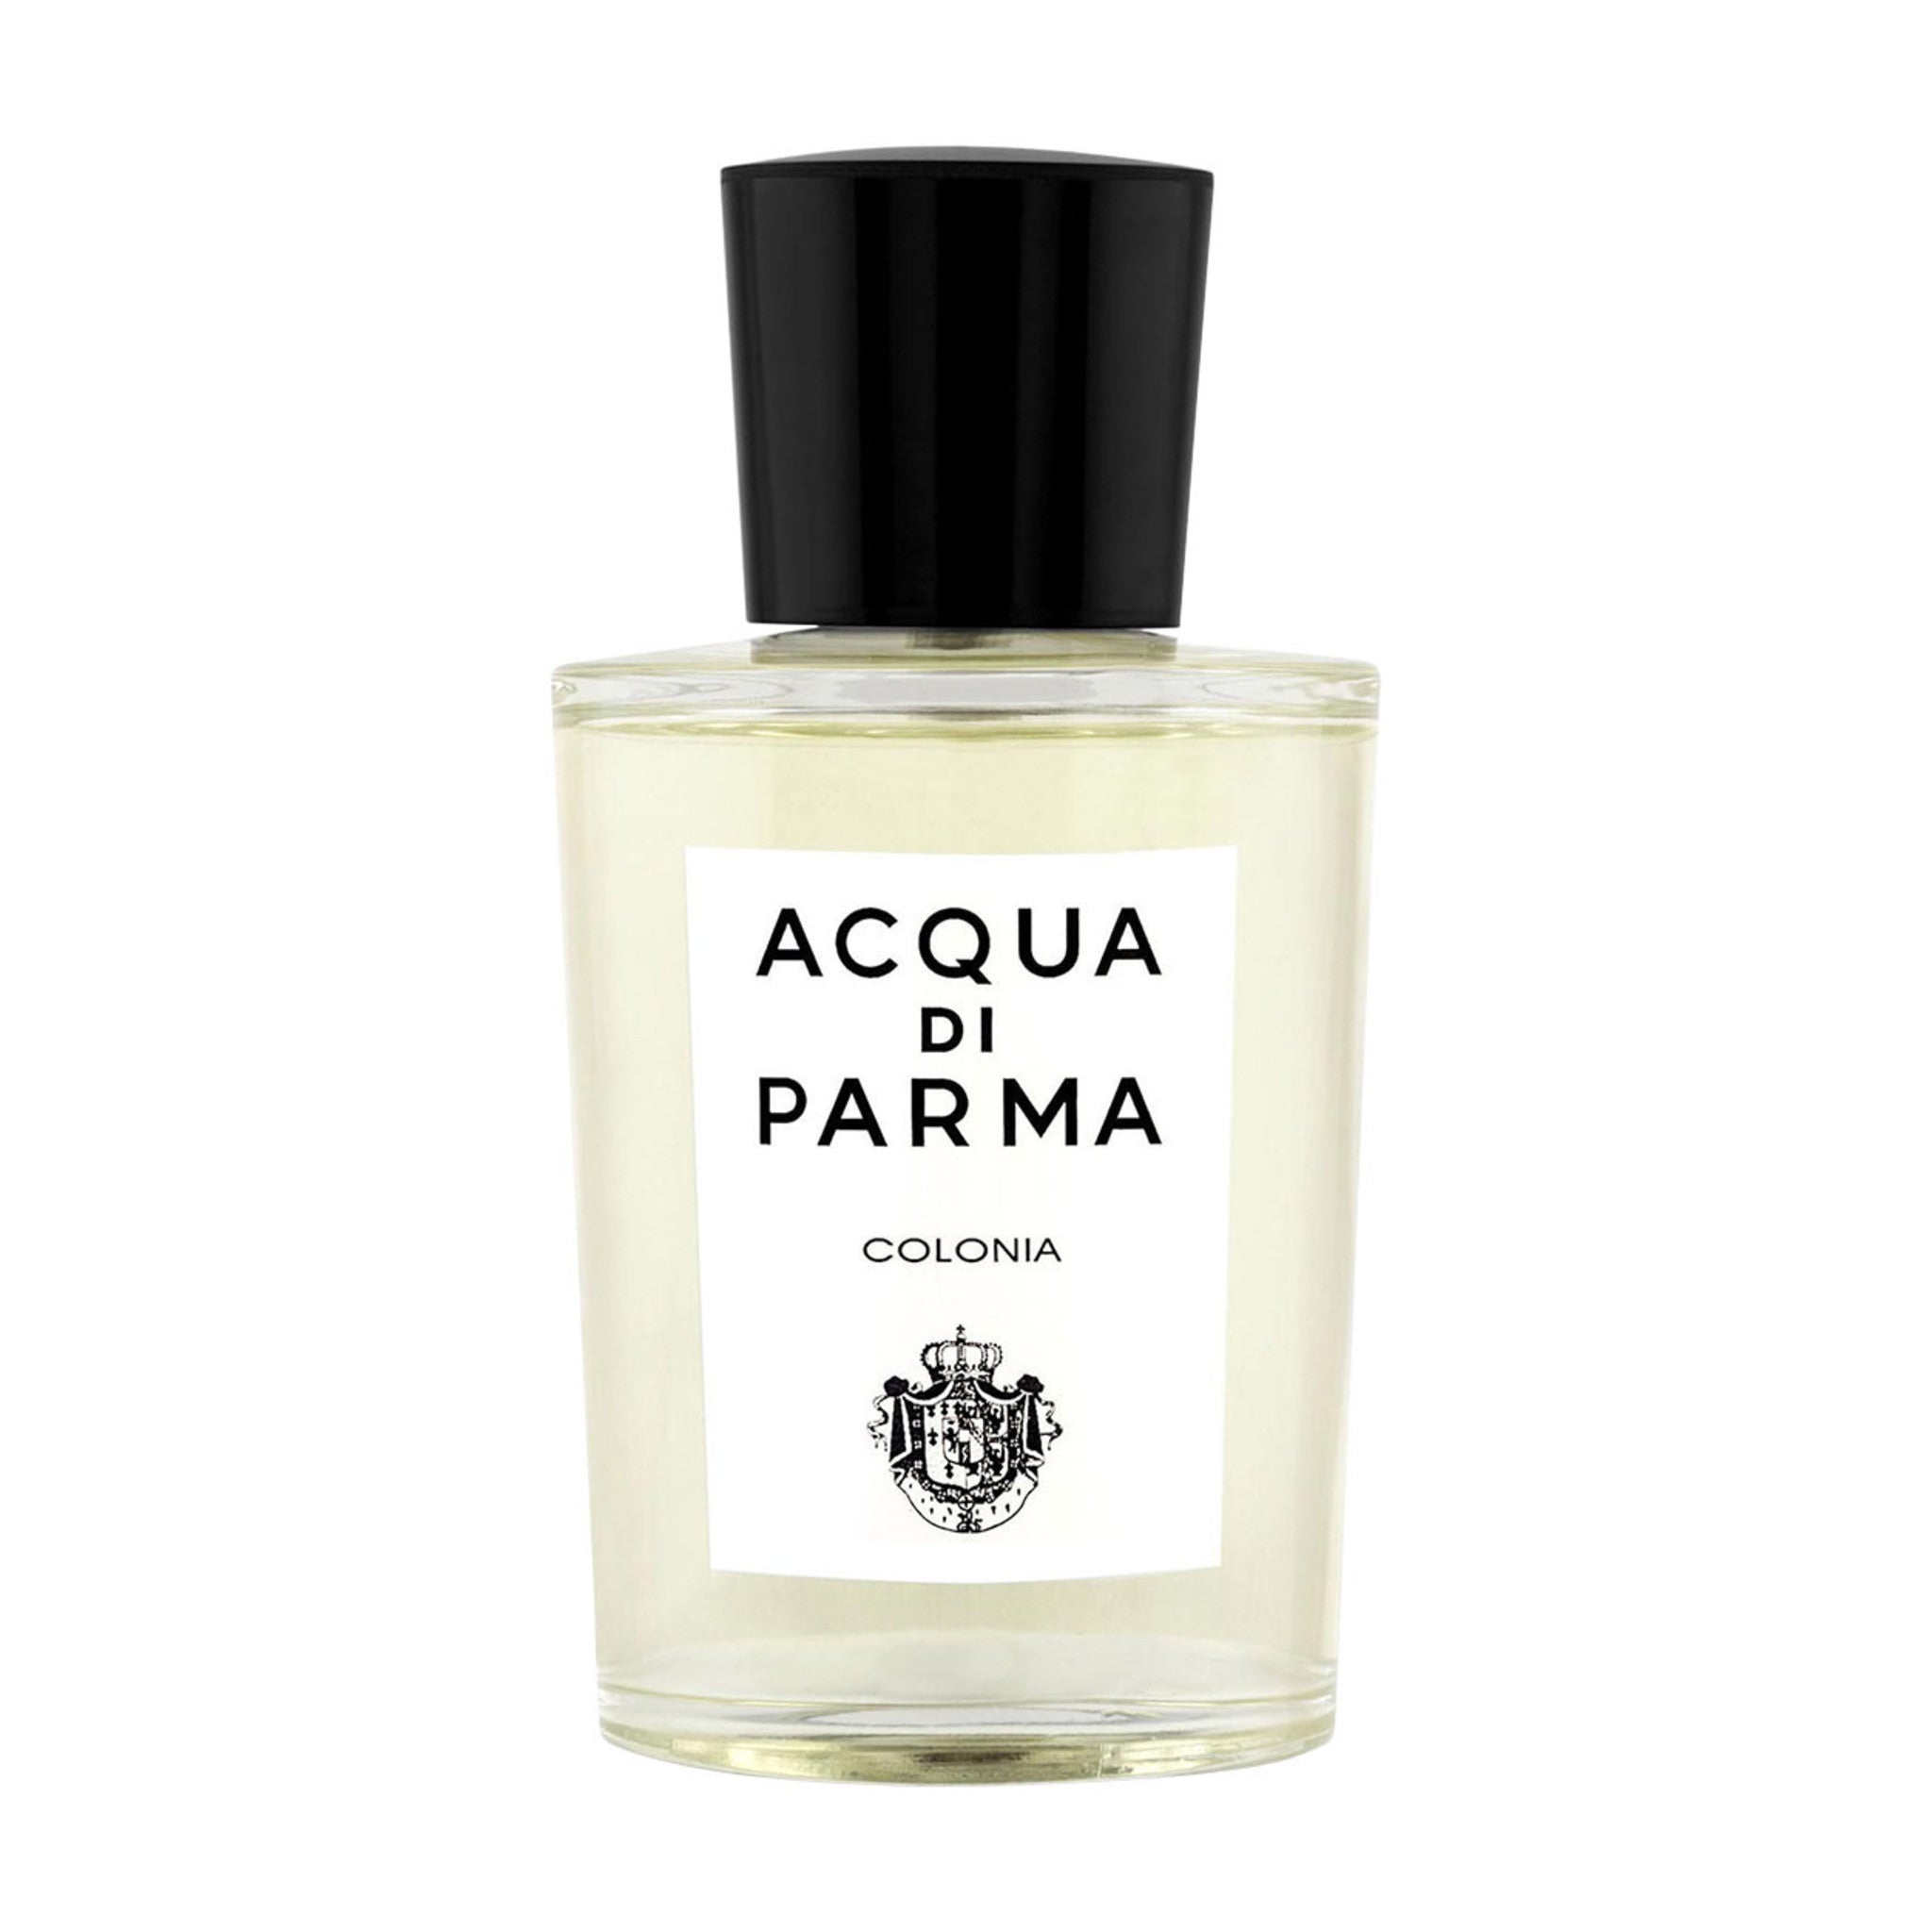 Shop Acqua di Parma Acqua Di Parma Colonia C.L.U.B Eau de Cologne Fragrance